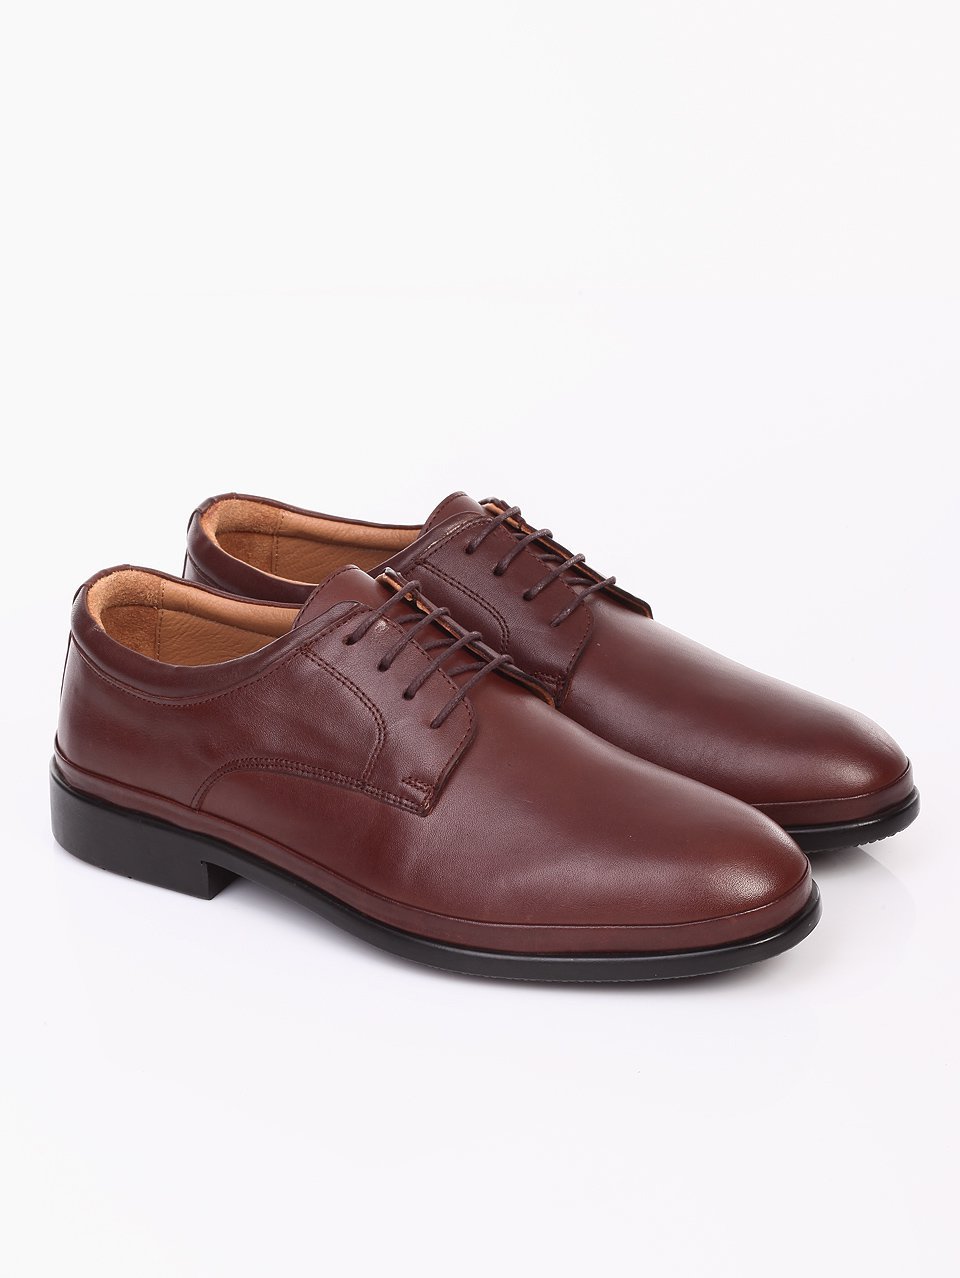 Елегантни мъжки обувки от естествена кожа 7AT-16875 brown